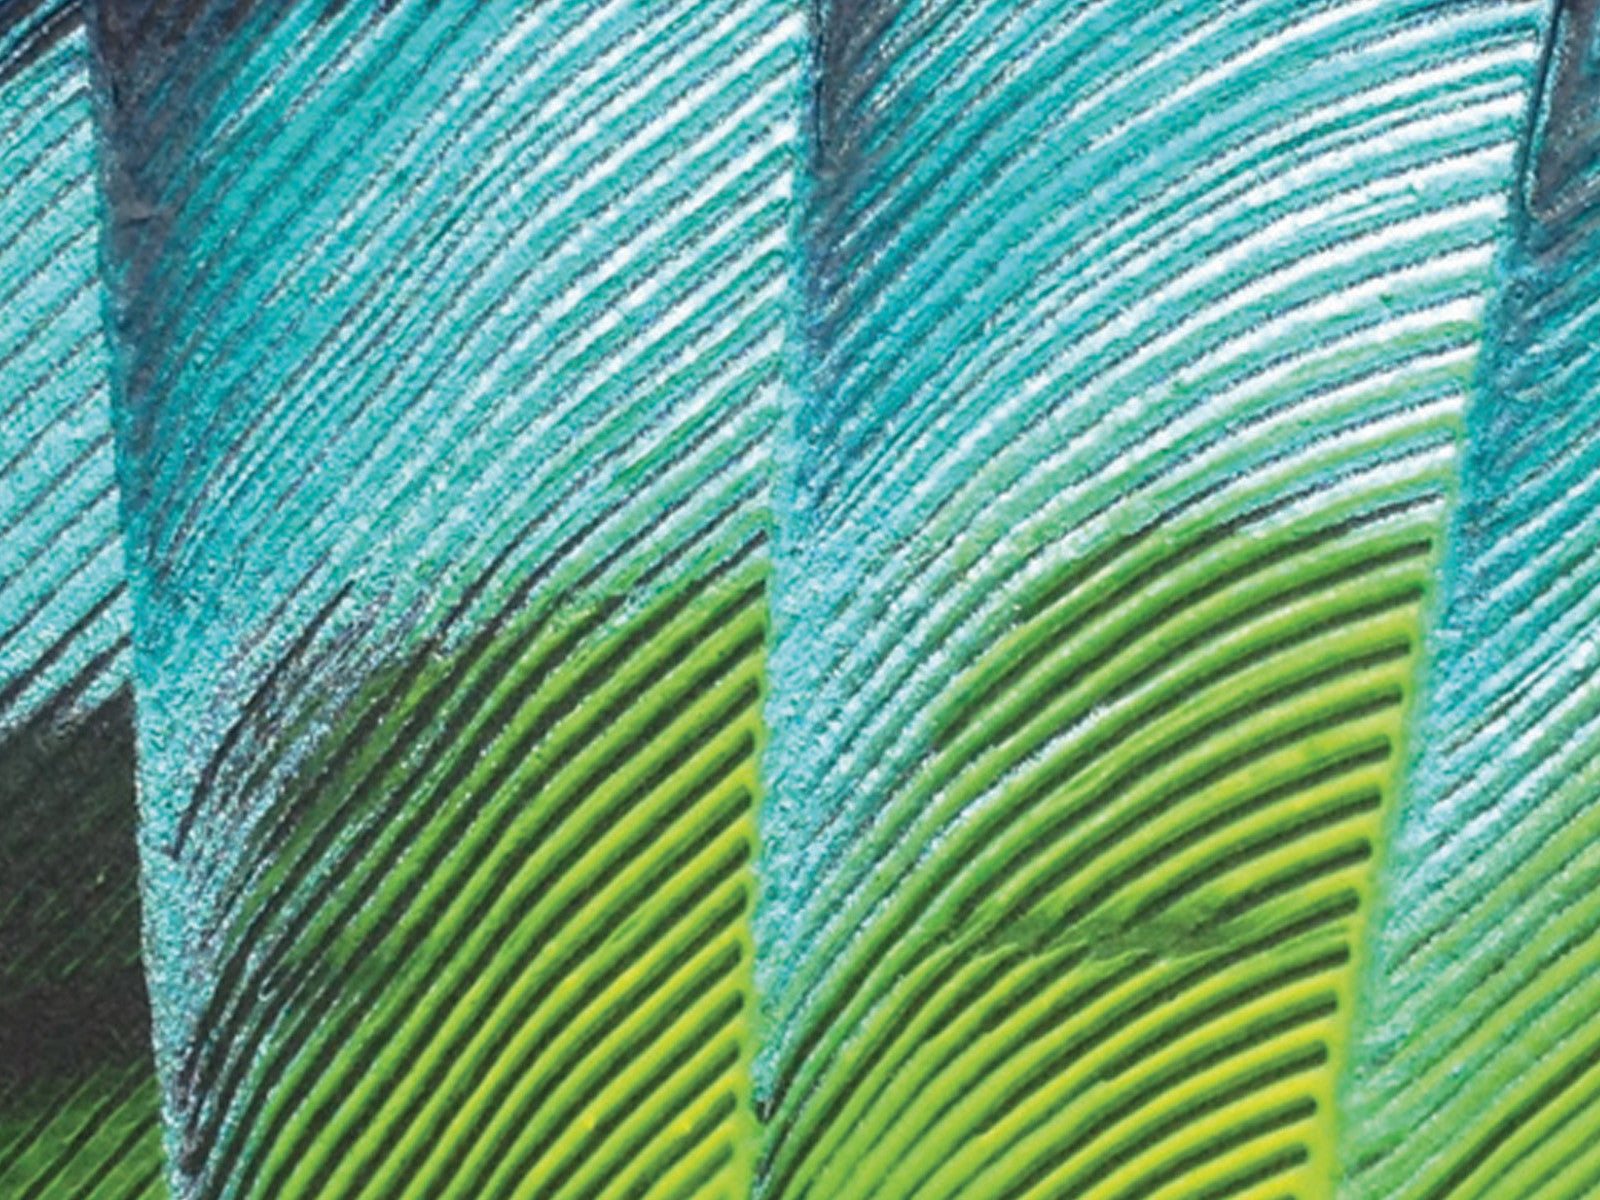 Macaw Hand-fan